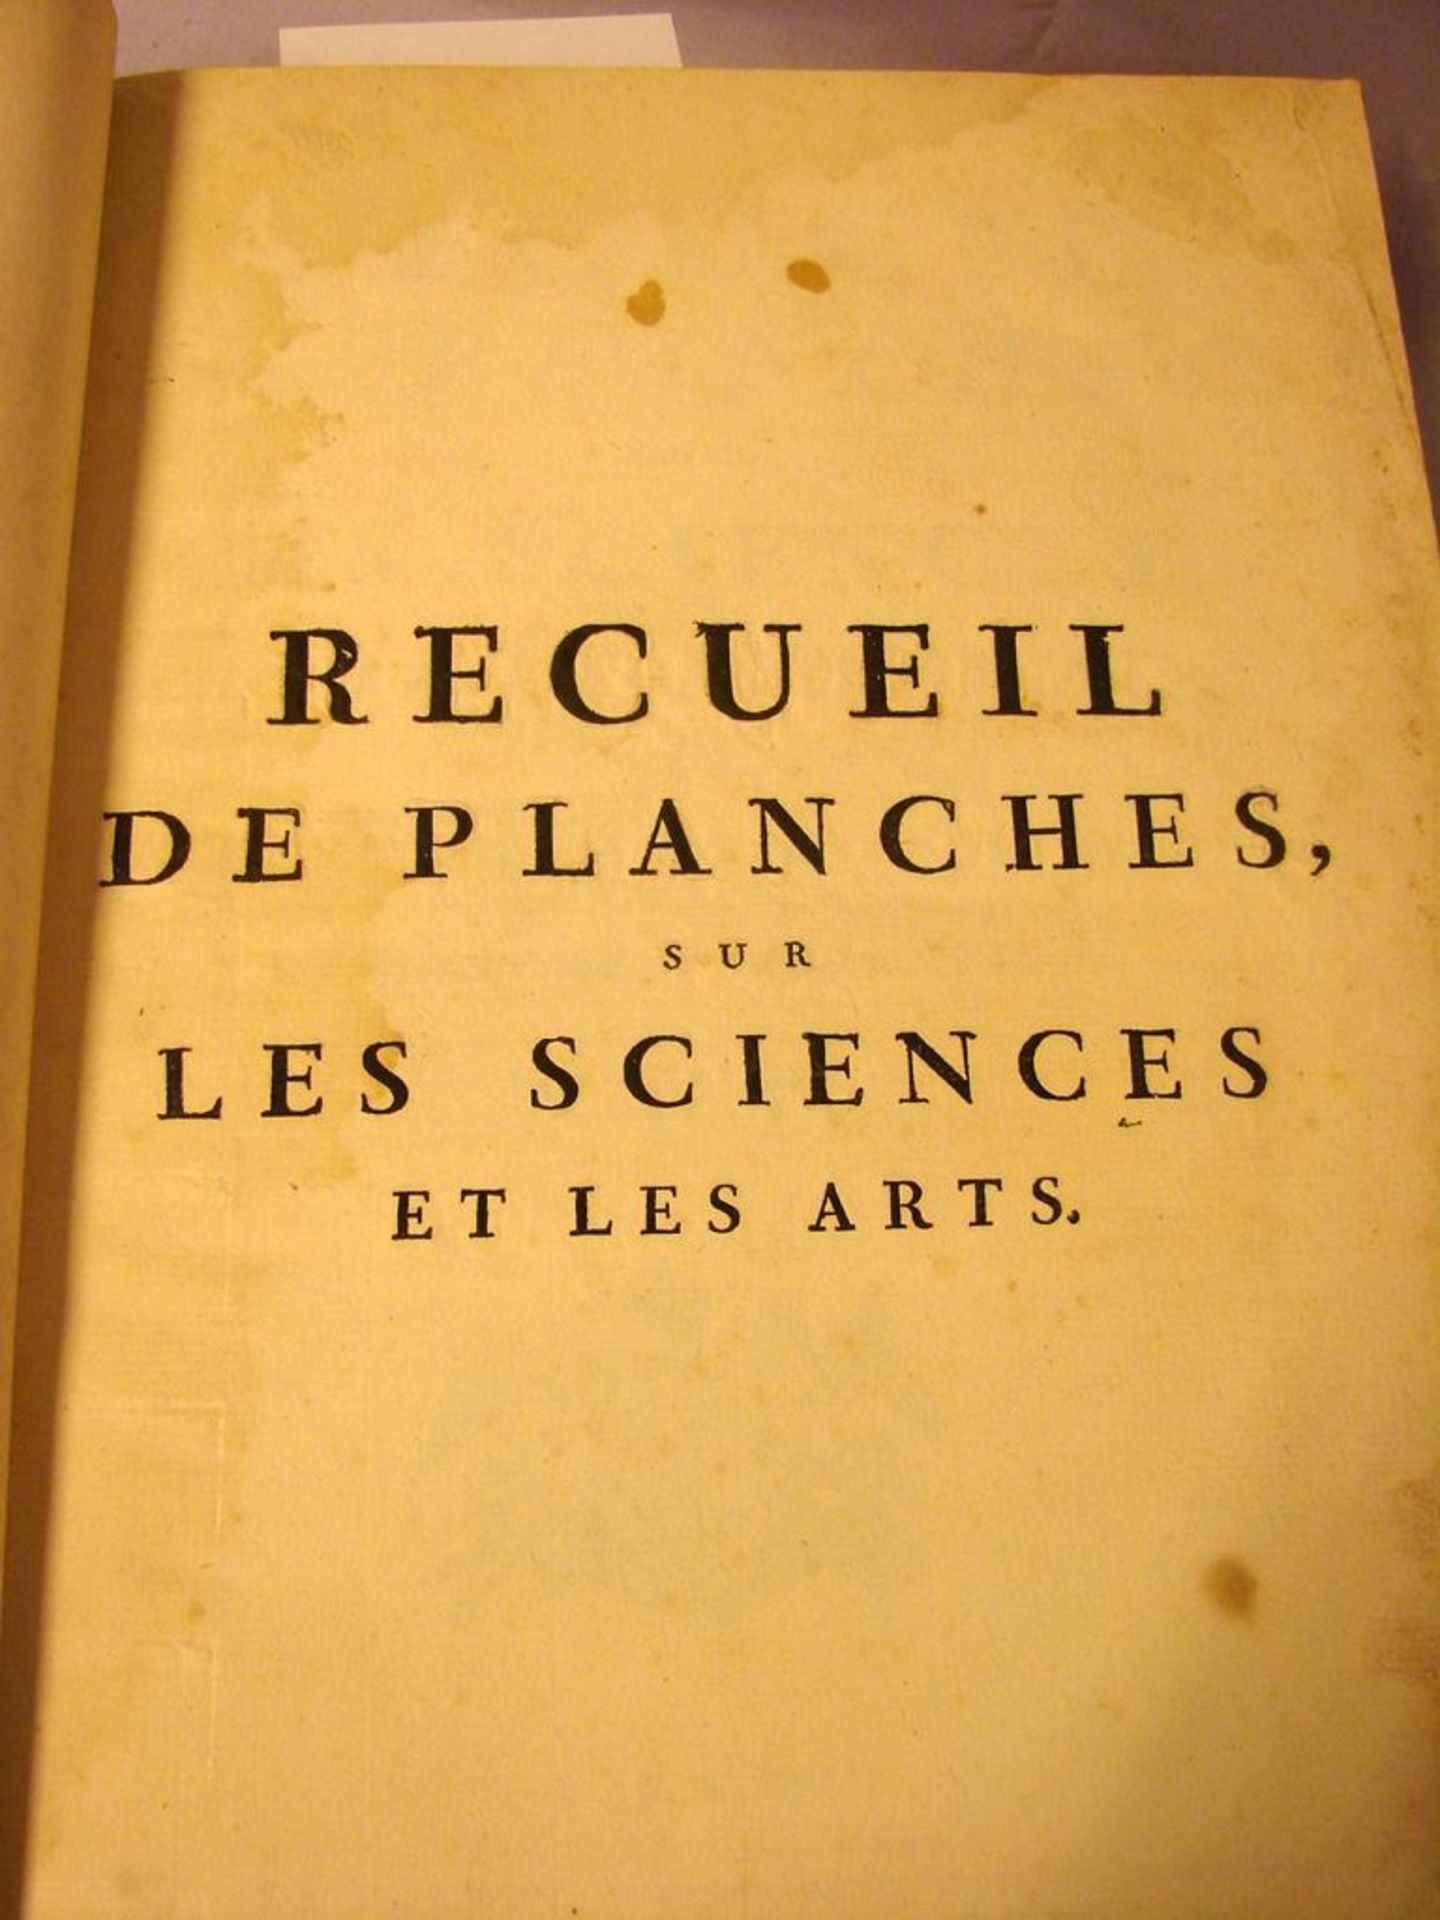 Buch, Recueil de Planches sur les Sciences et les Arts, Paris 1769, im Ledereinband - Bild 2 aus 4